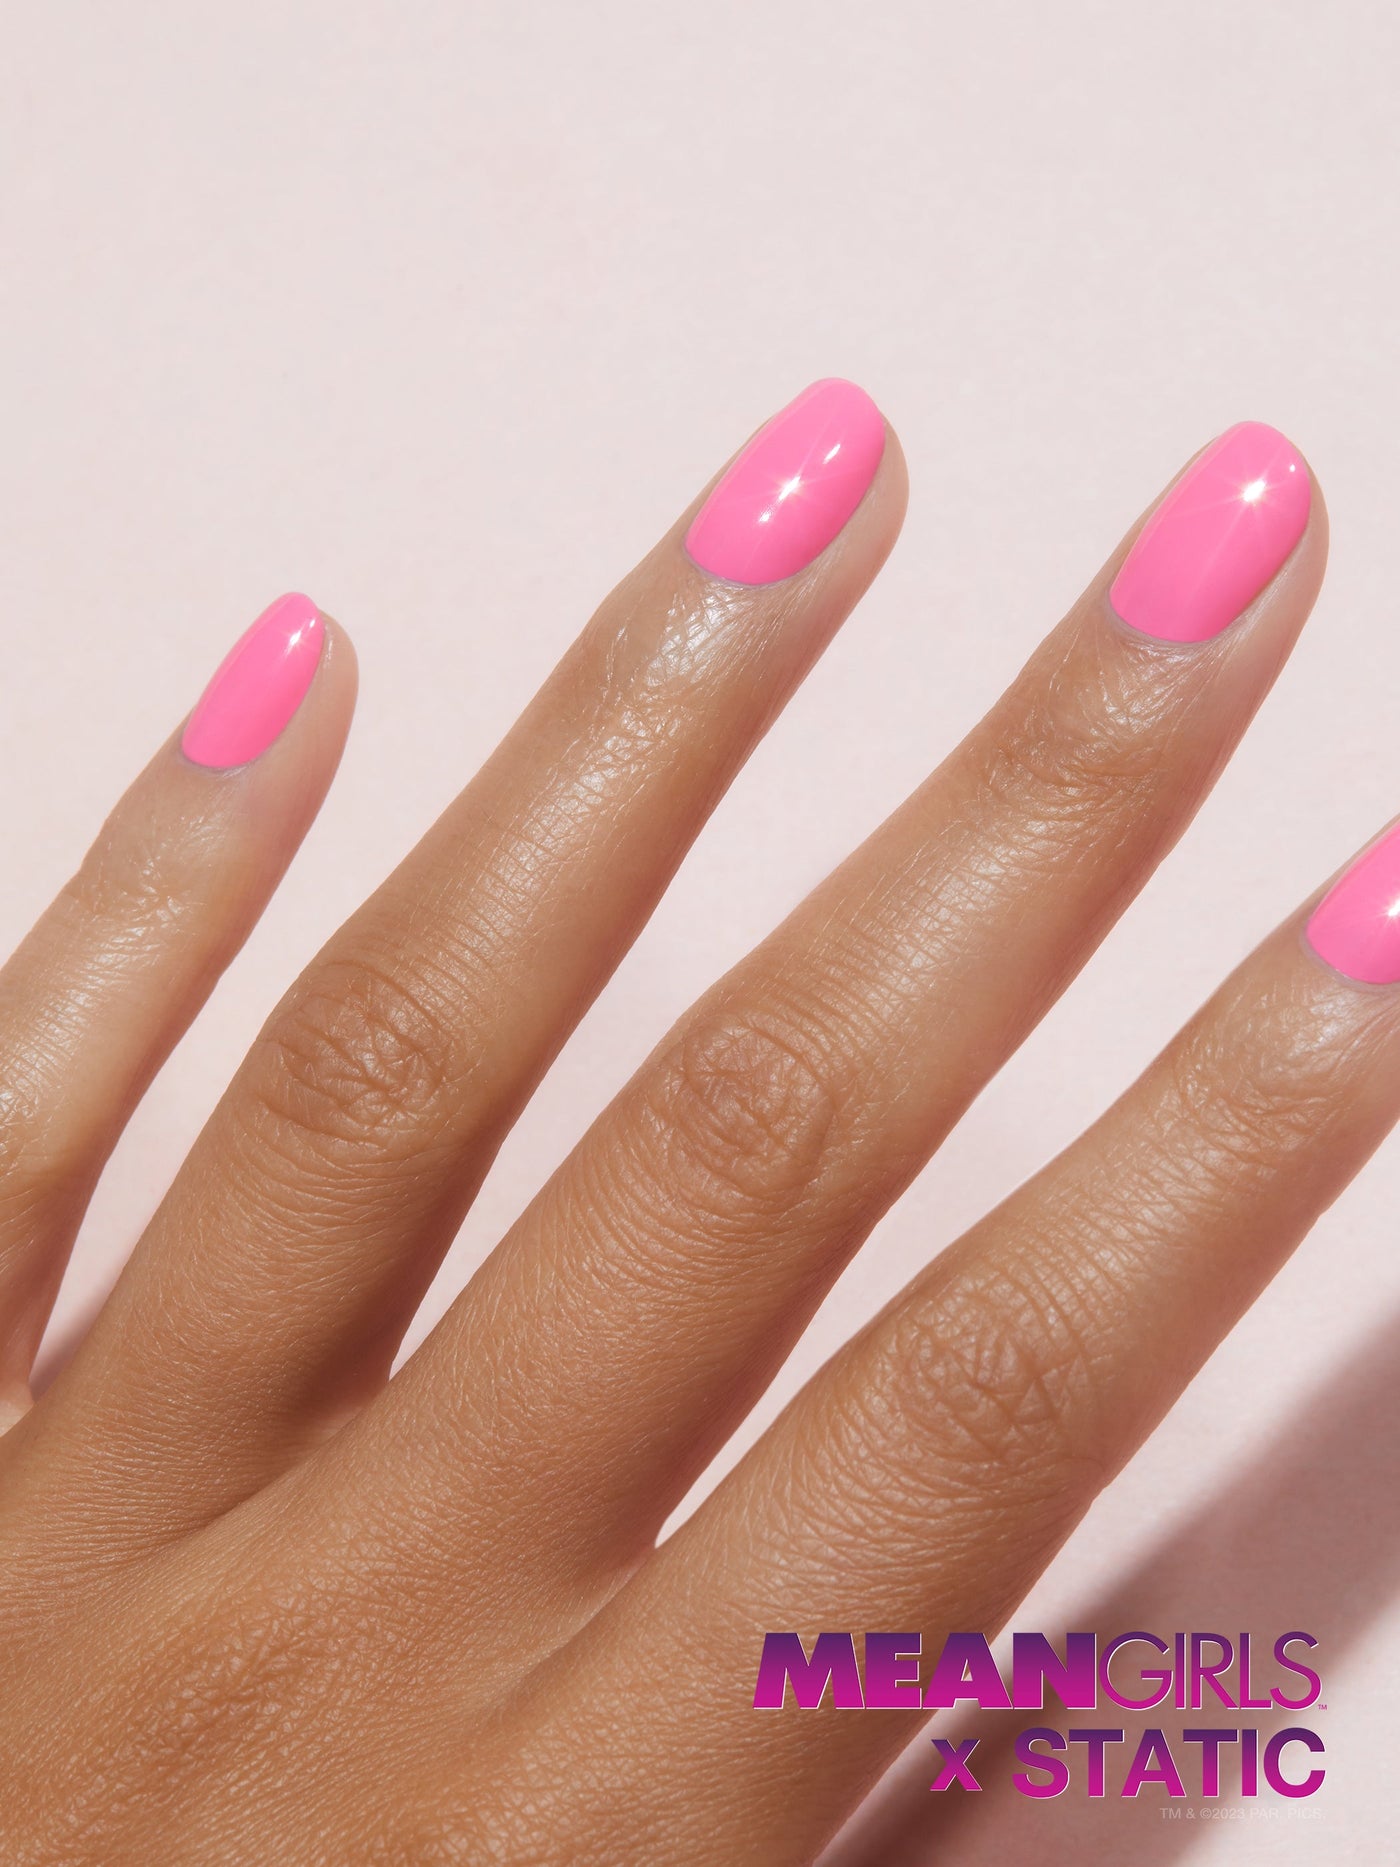 Medium pink nail polish, Rich,